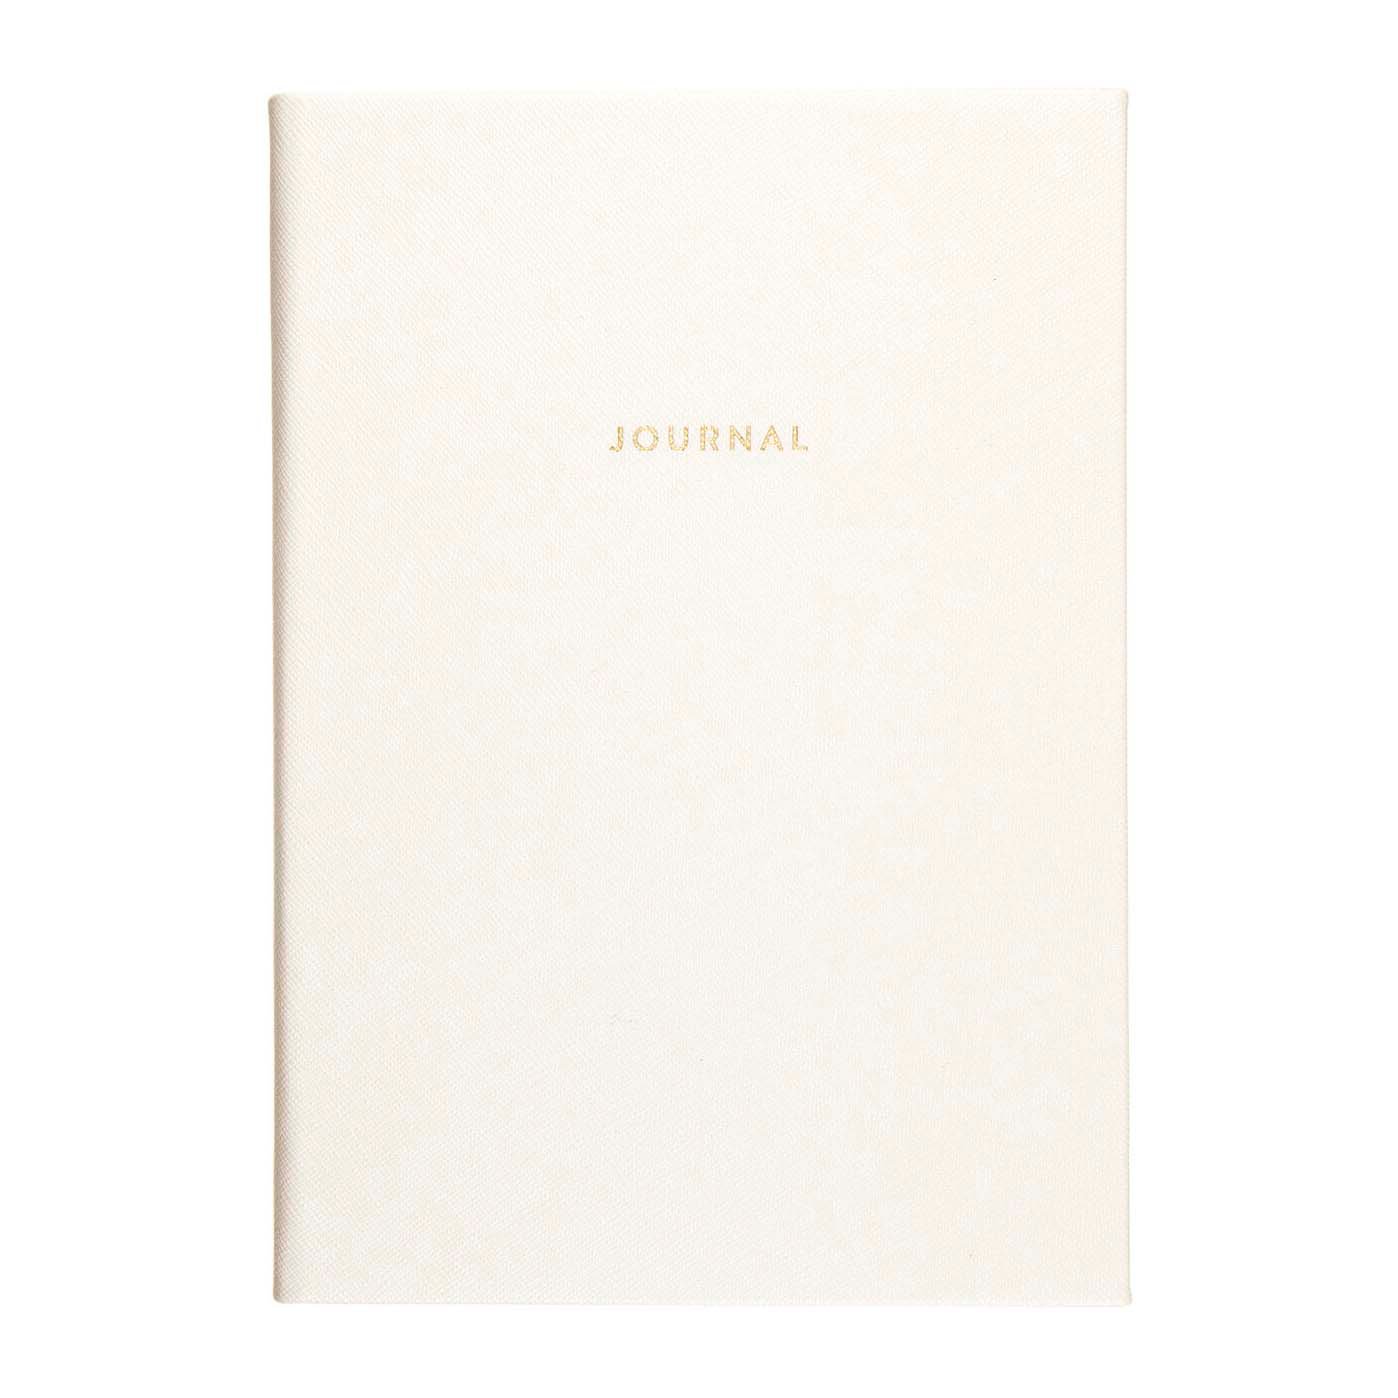 Eccolo White Saffiano Style Journal - Shop Notebooks at H-E-B